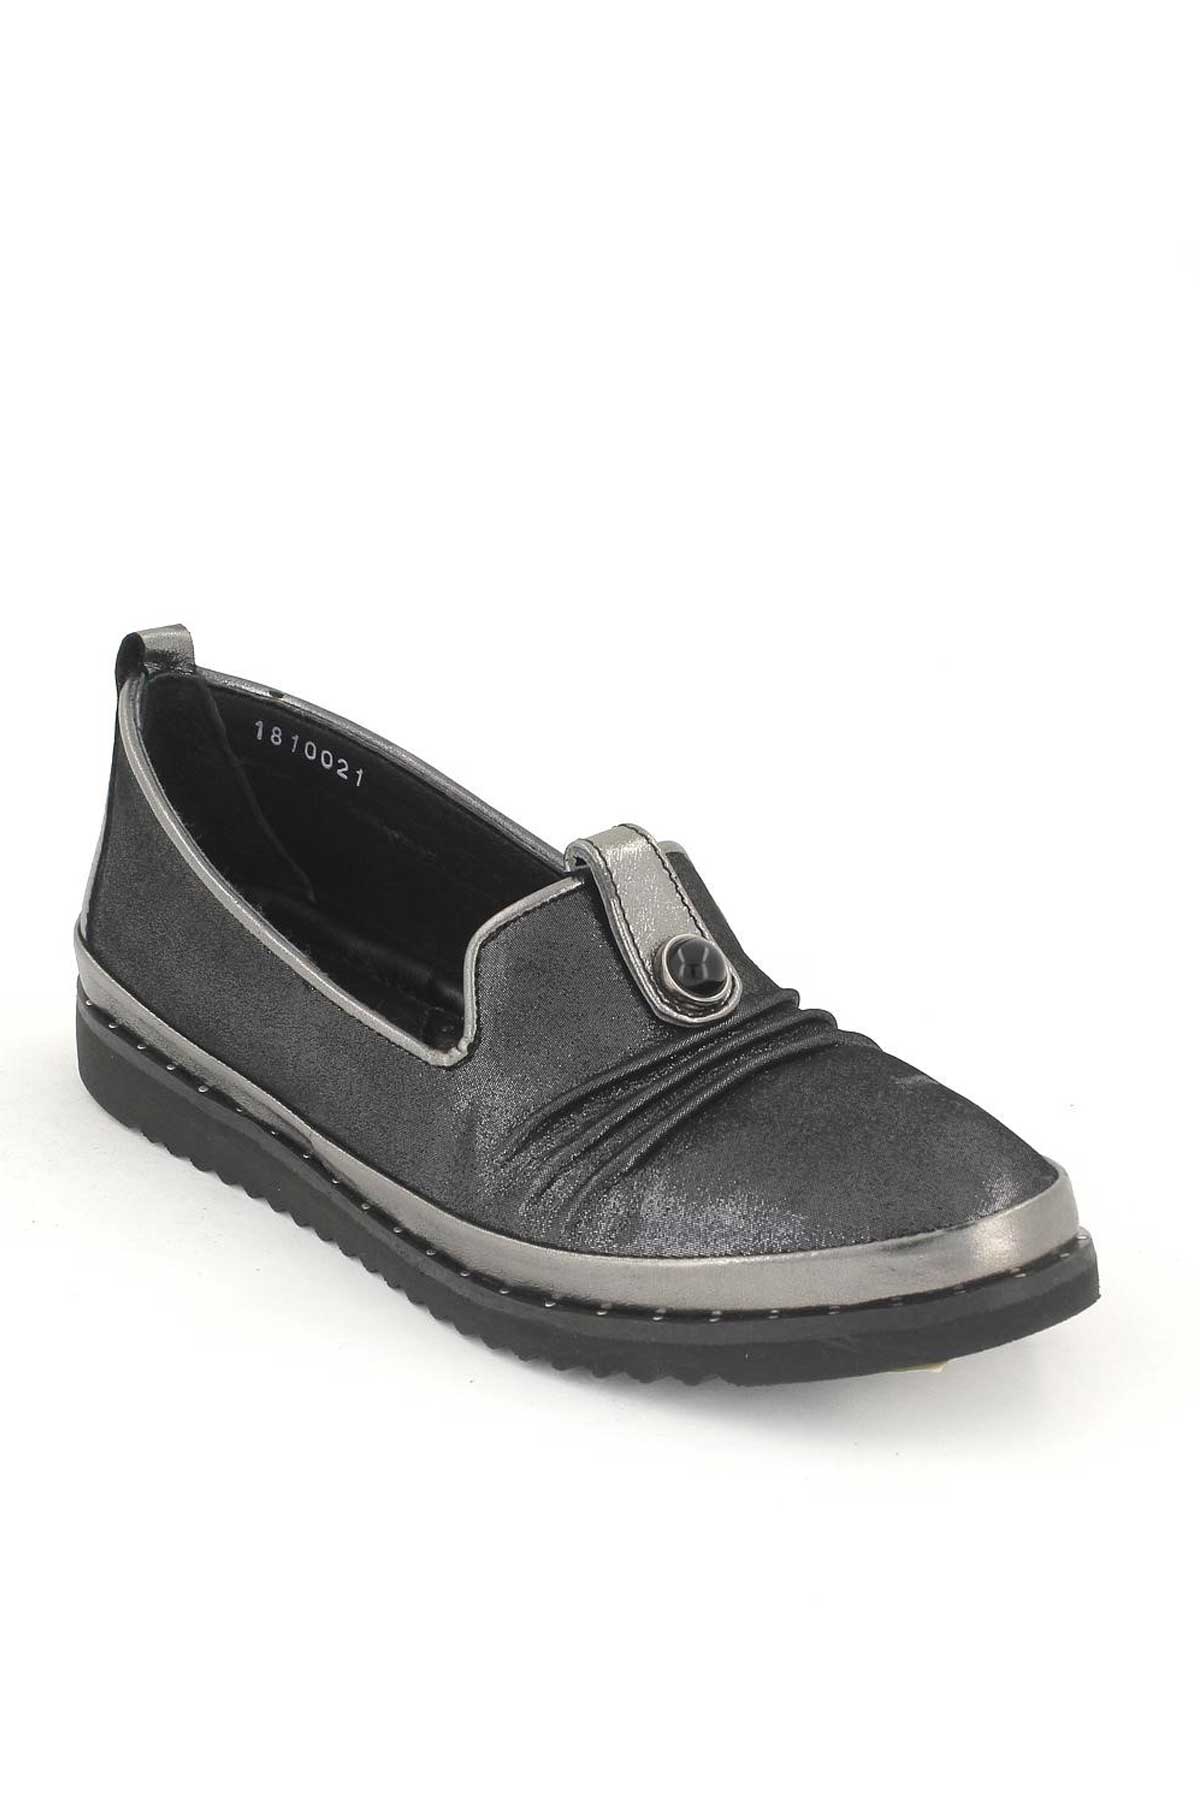 Kadın Deri Comfort Ayakkabı Platin 1810021K